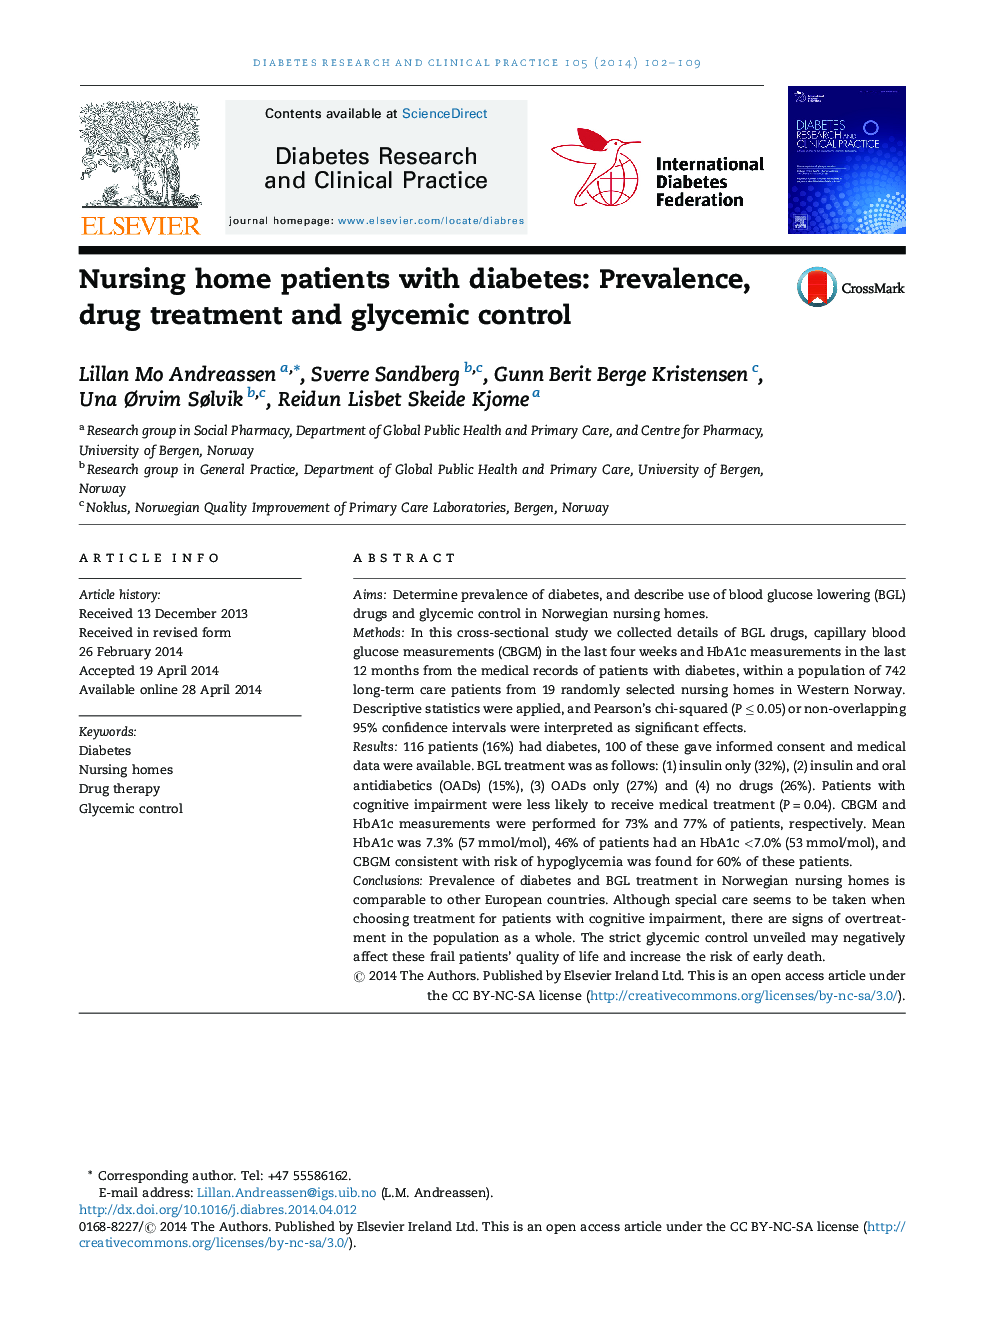 بیماران مبتلا به دیابت نوع 1: شیوع، درمان دارویی و کنترل گلیسمی 